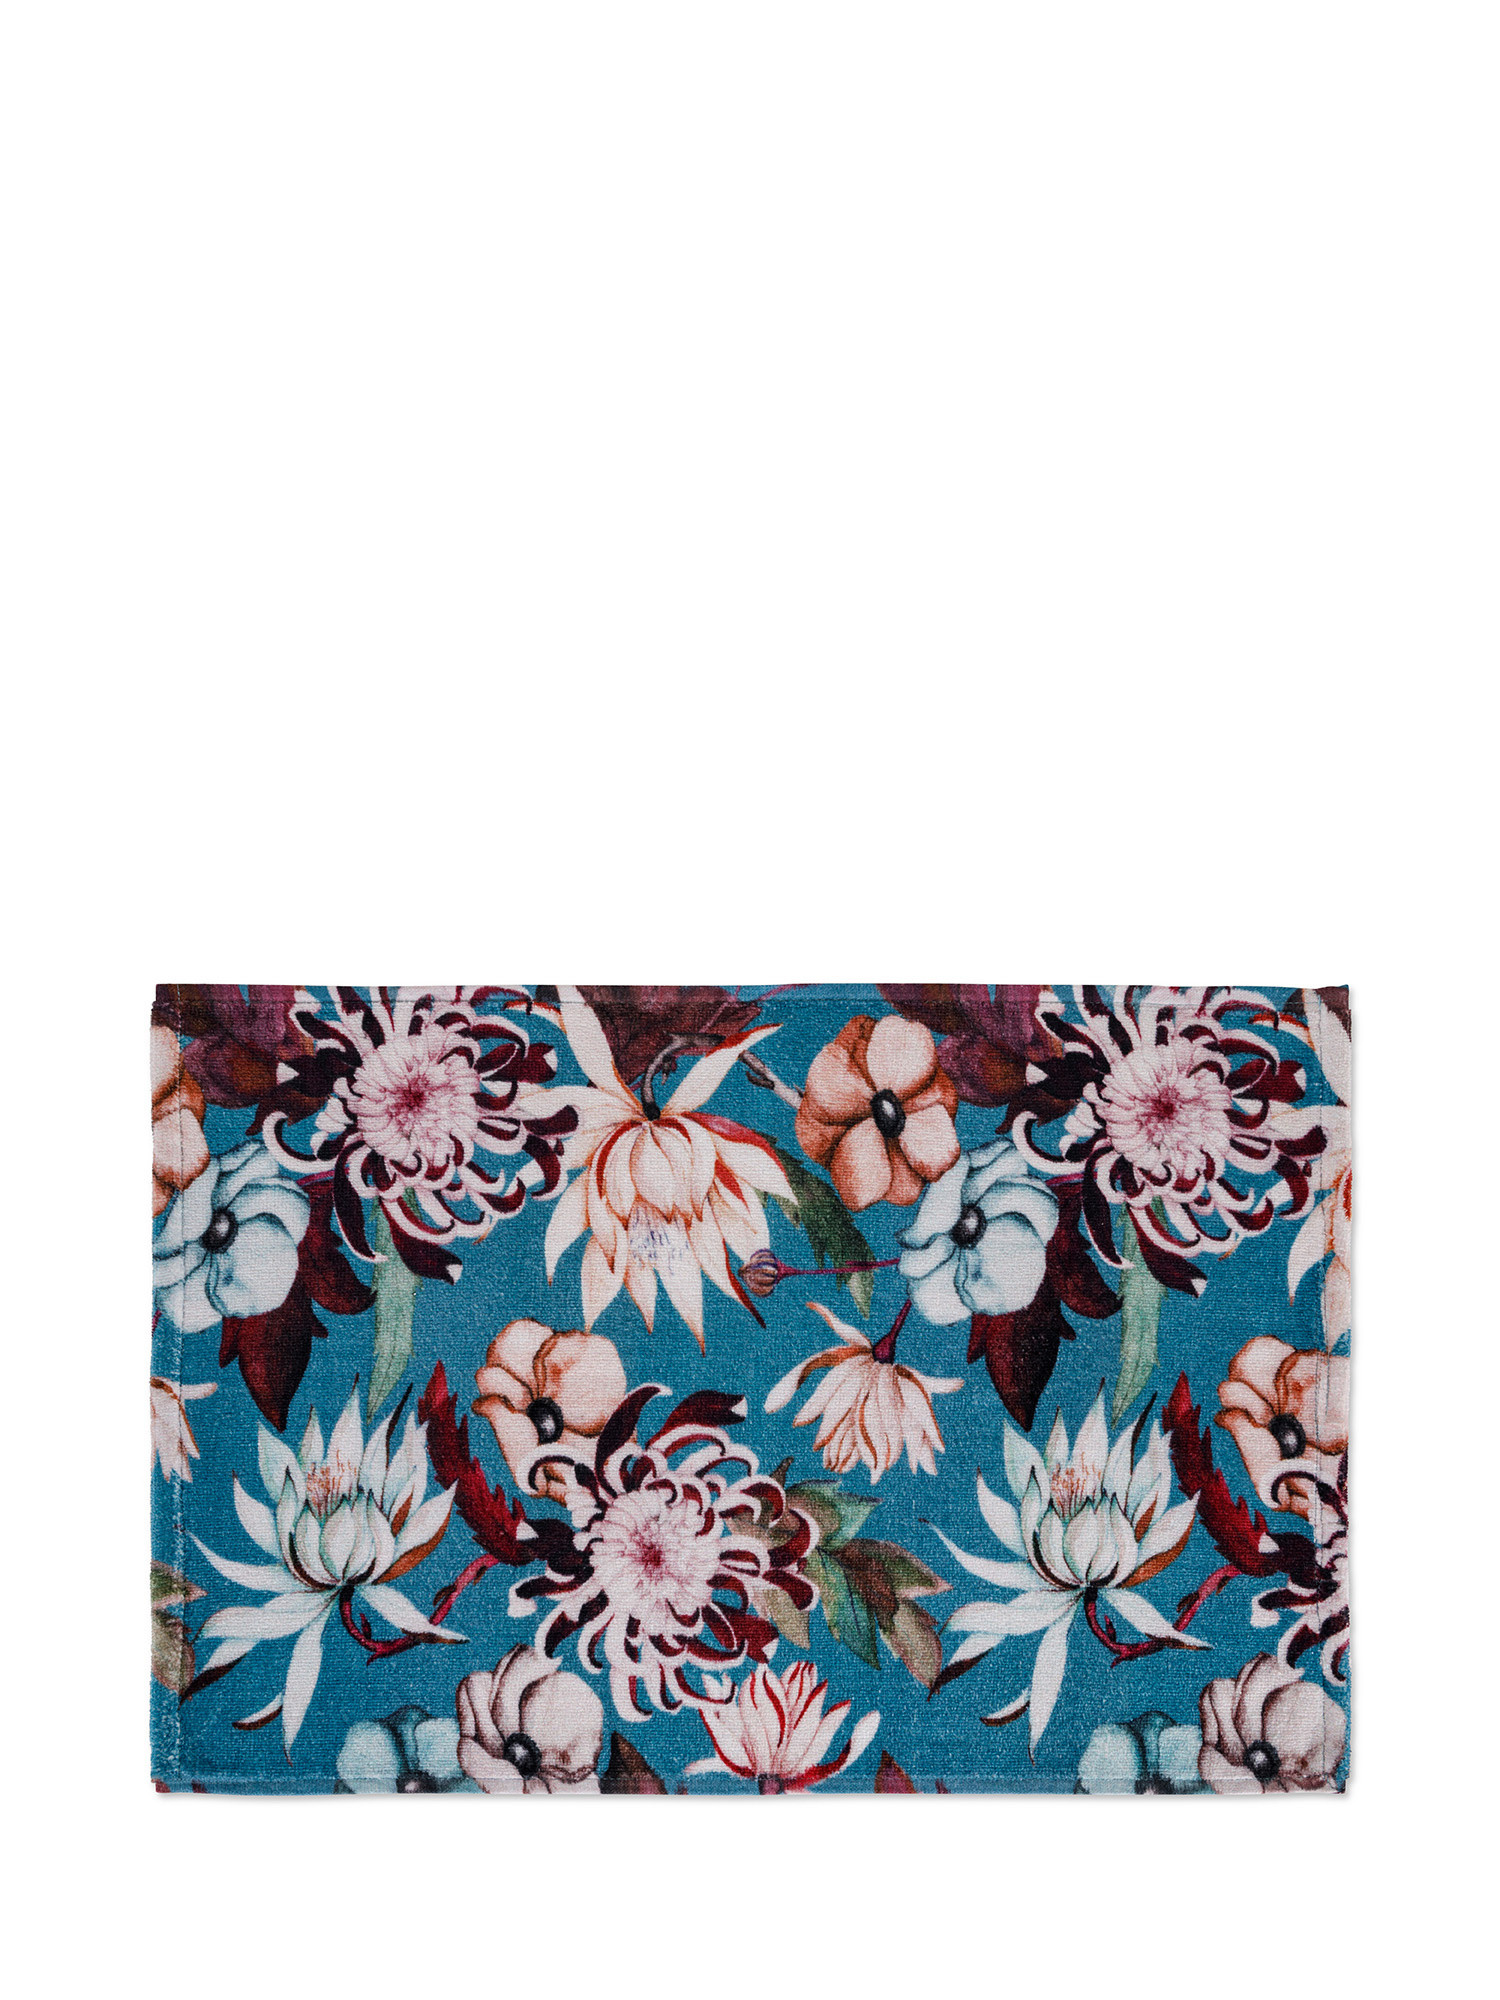 Asciugamano in spugna di cotone velour con stampa floreale, Azzurro, large image number 1